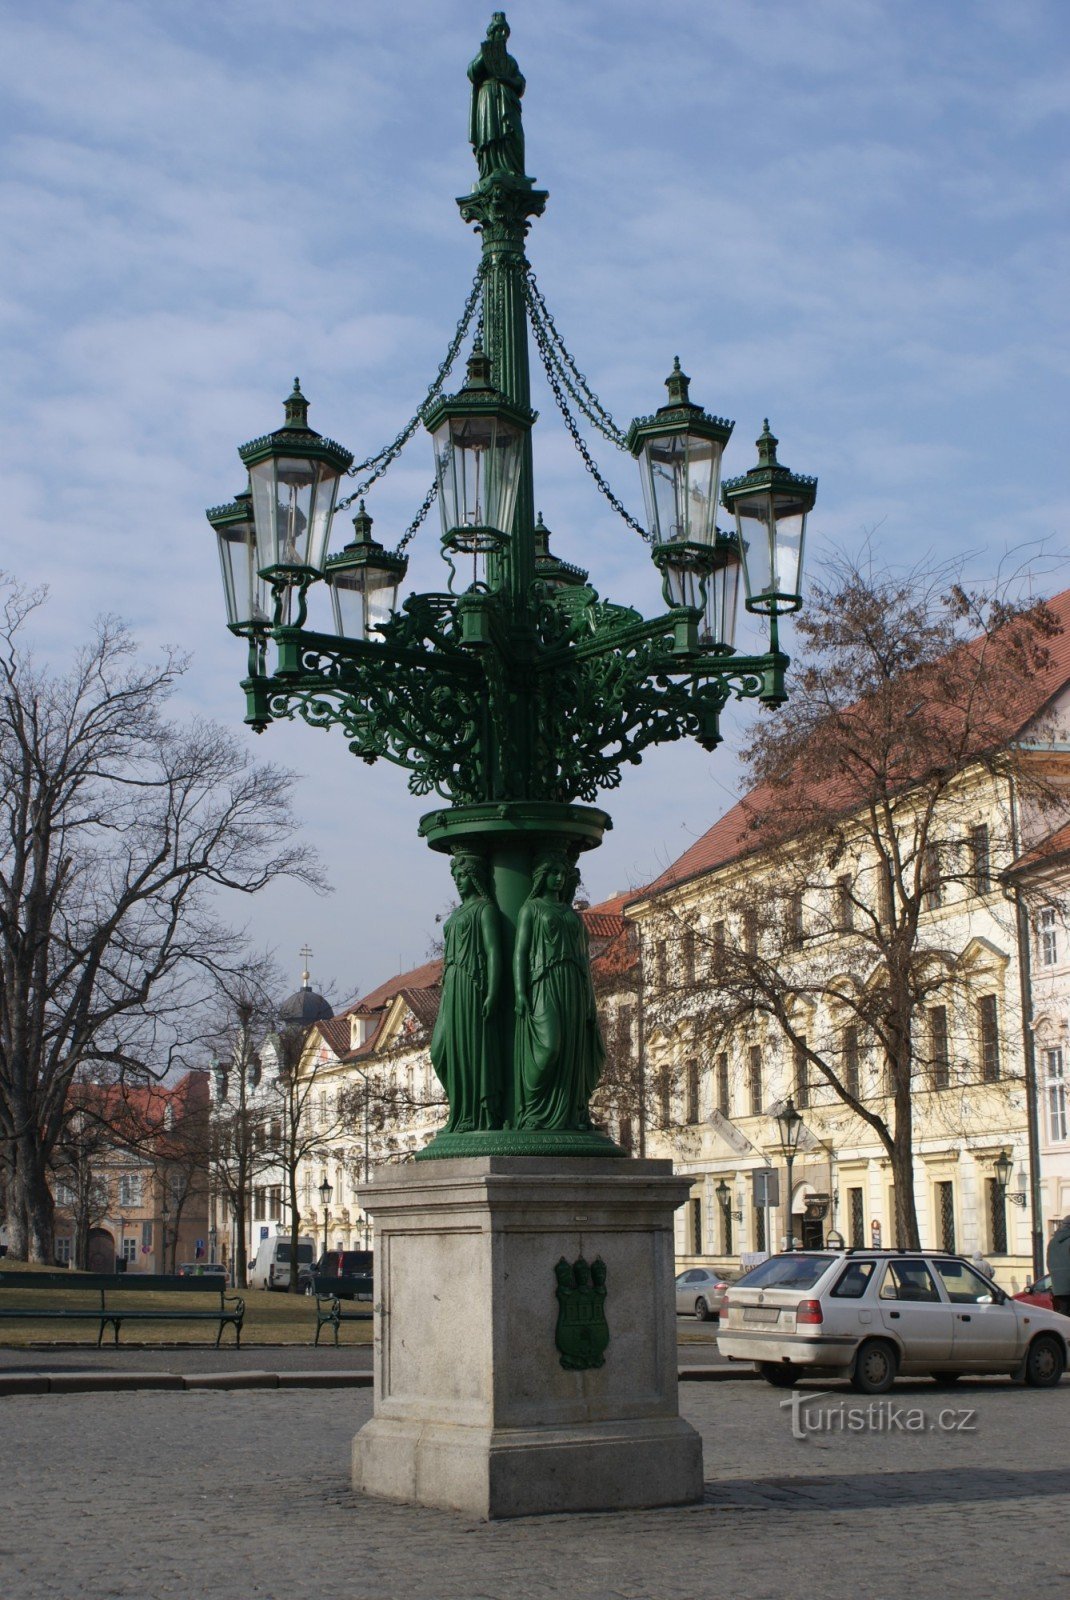 Prag - lyktstolpe för gatubelysning (gaslampa med åtta strålar)